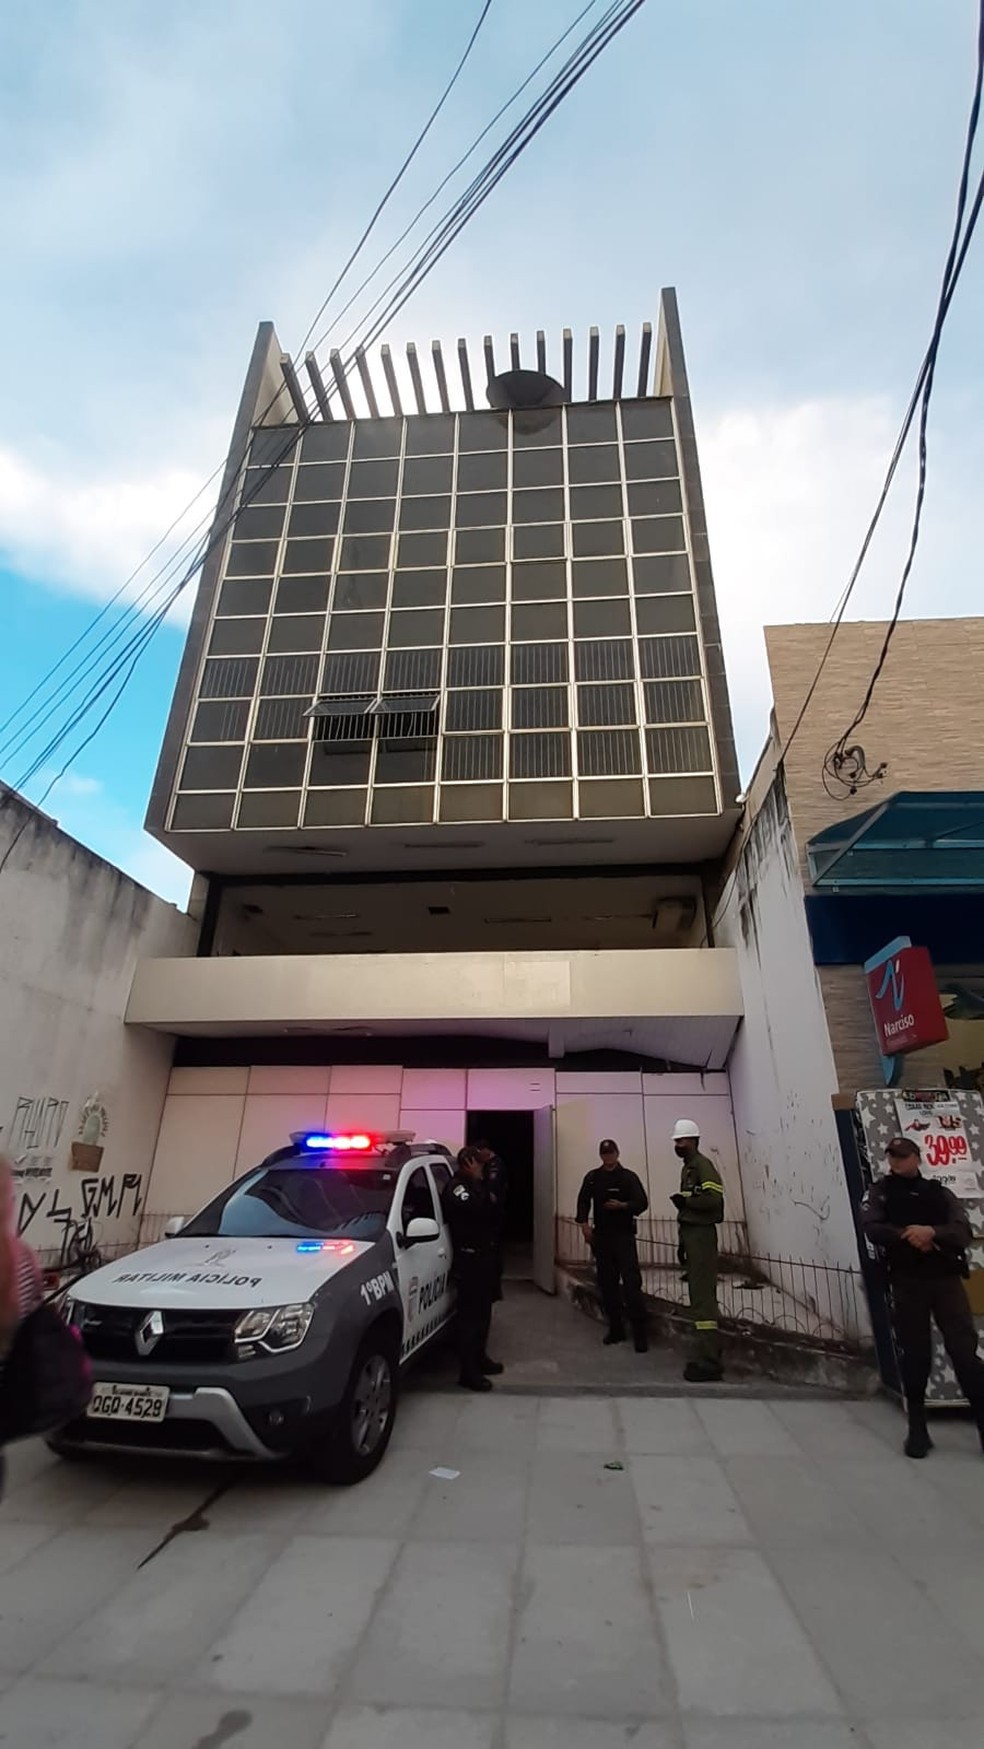 Homem morre eletrocutado ao tentar roubar fiação de prédio abandonado em Natal — Foto: Sérgio Henrique Santos/Inter TV Cabugi